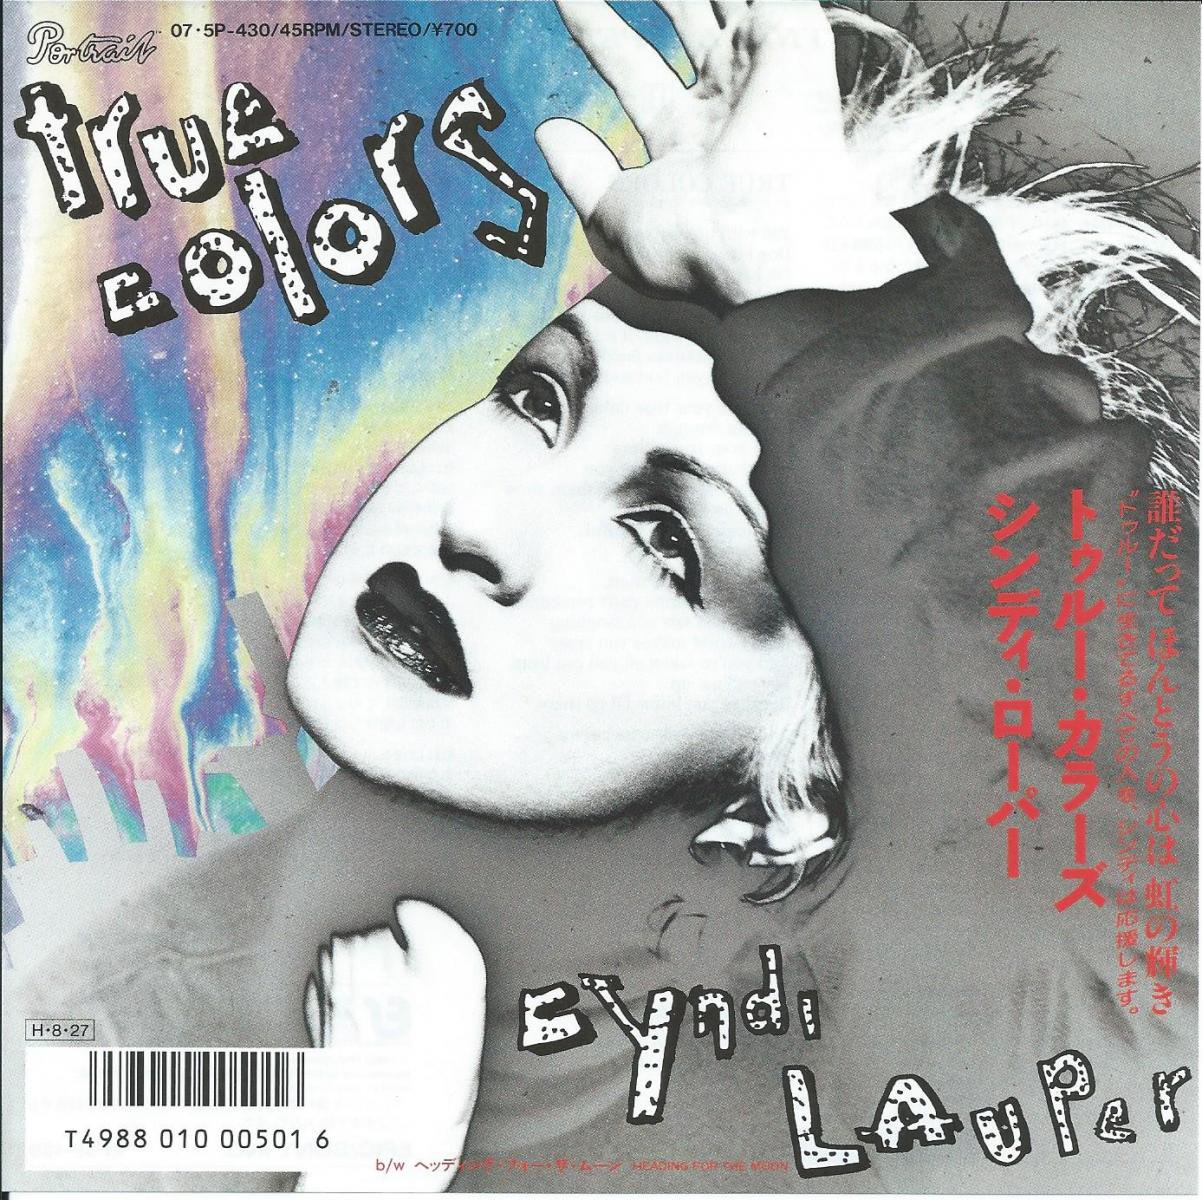 シンディ ローパー Cyndi Lauper トゥルー カラーズ True Colors ヘッディング フォー ザ ムーン Heading For The Moon 7 Hip Tank Records